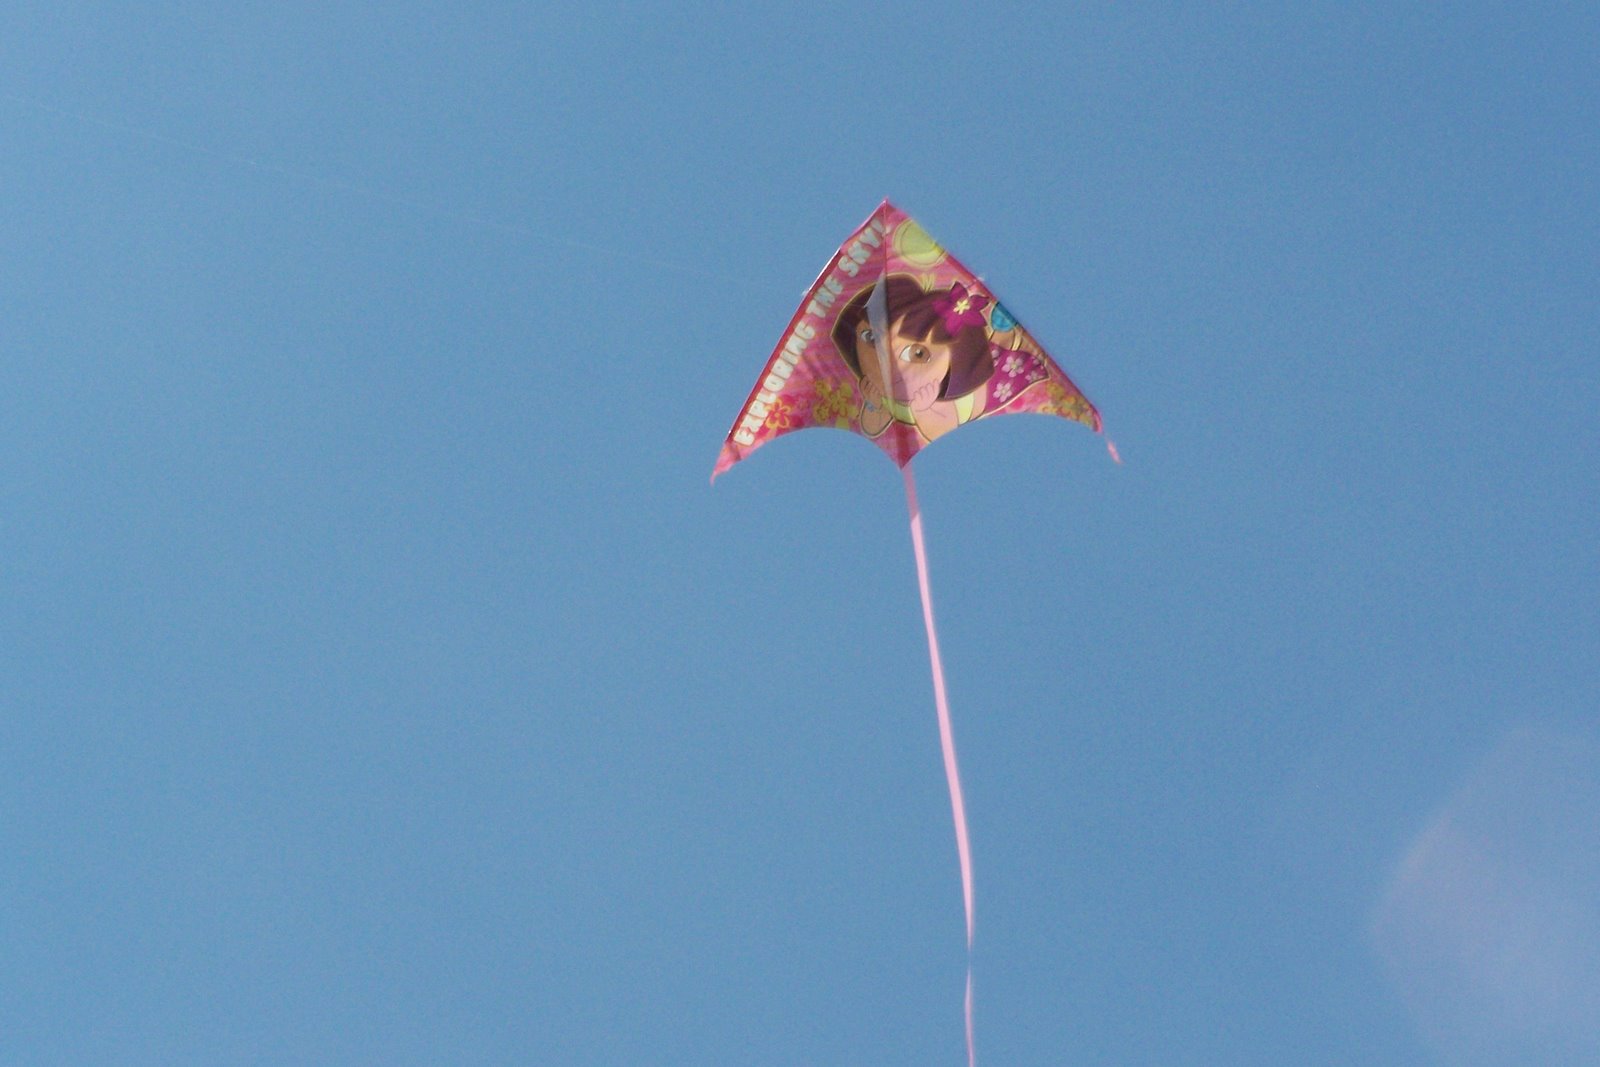 [flying+kites+010.jpg]